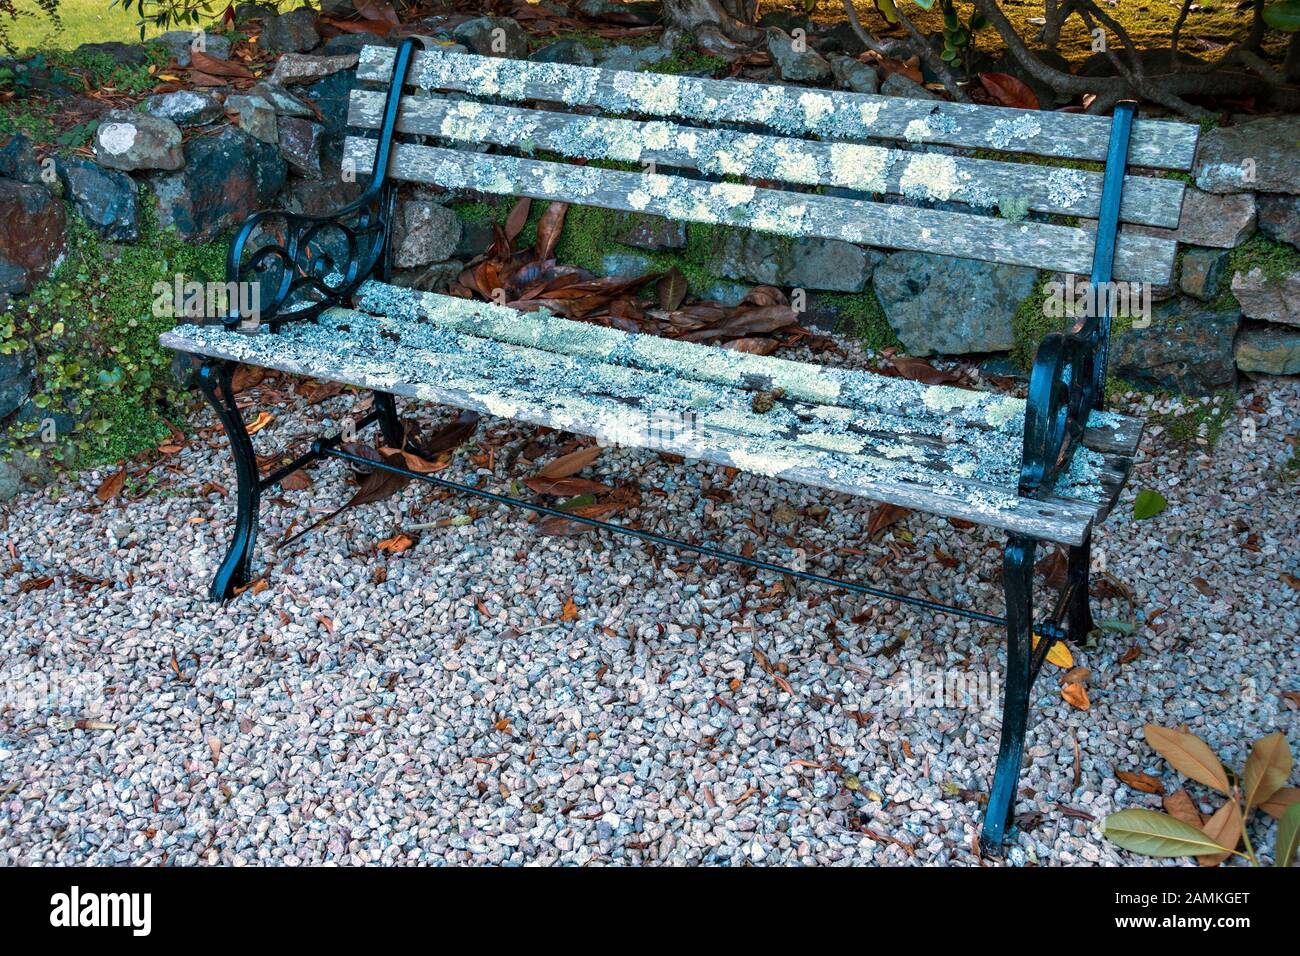 Panchina da giardino sedile con nero metallo verniciato supporti di estremità e di assicelle di legno che sono ricoperte da licheni permanente sulla ghiaia, Cornwall, Regno Unito Foto Stock